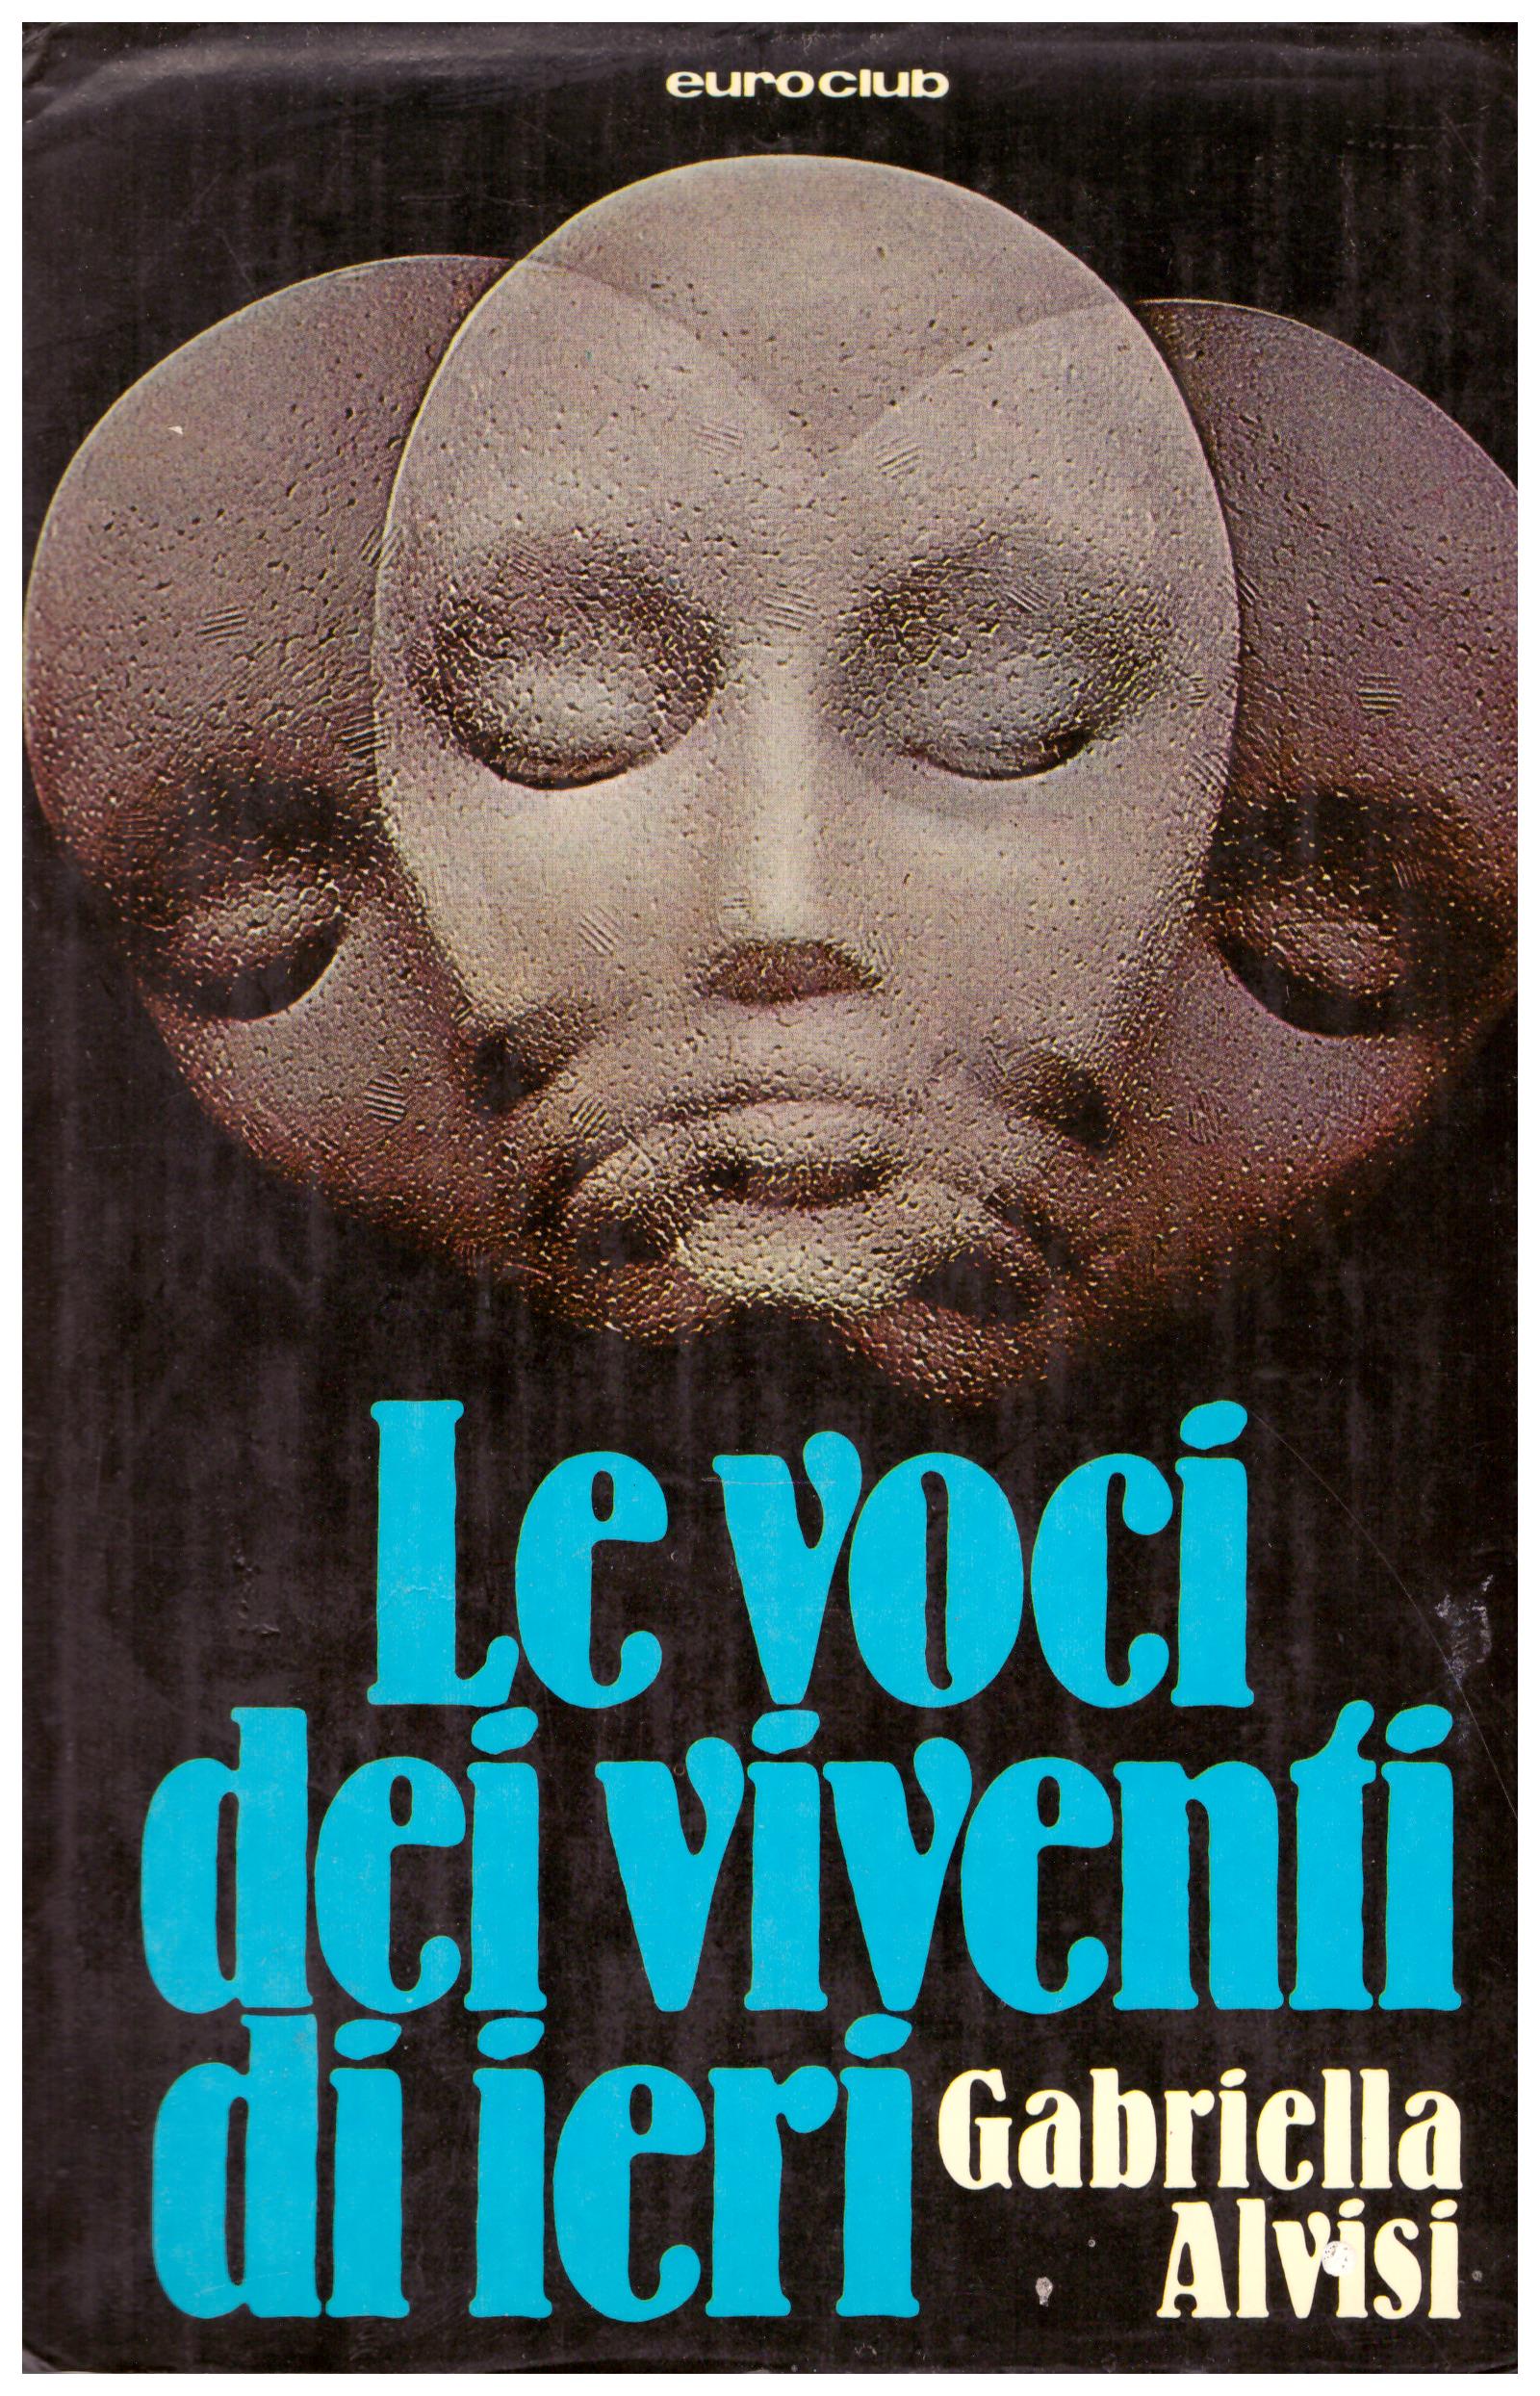 Titolo: Le voci dei viventi di ieri Autore : Gabriella Alvisi Editore: euroclub 1978